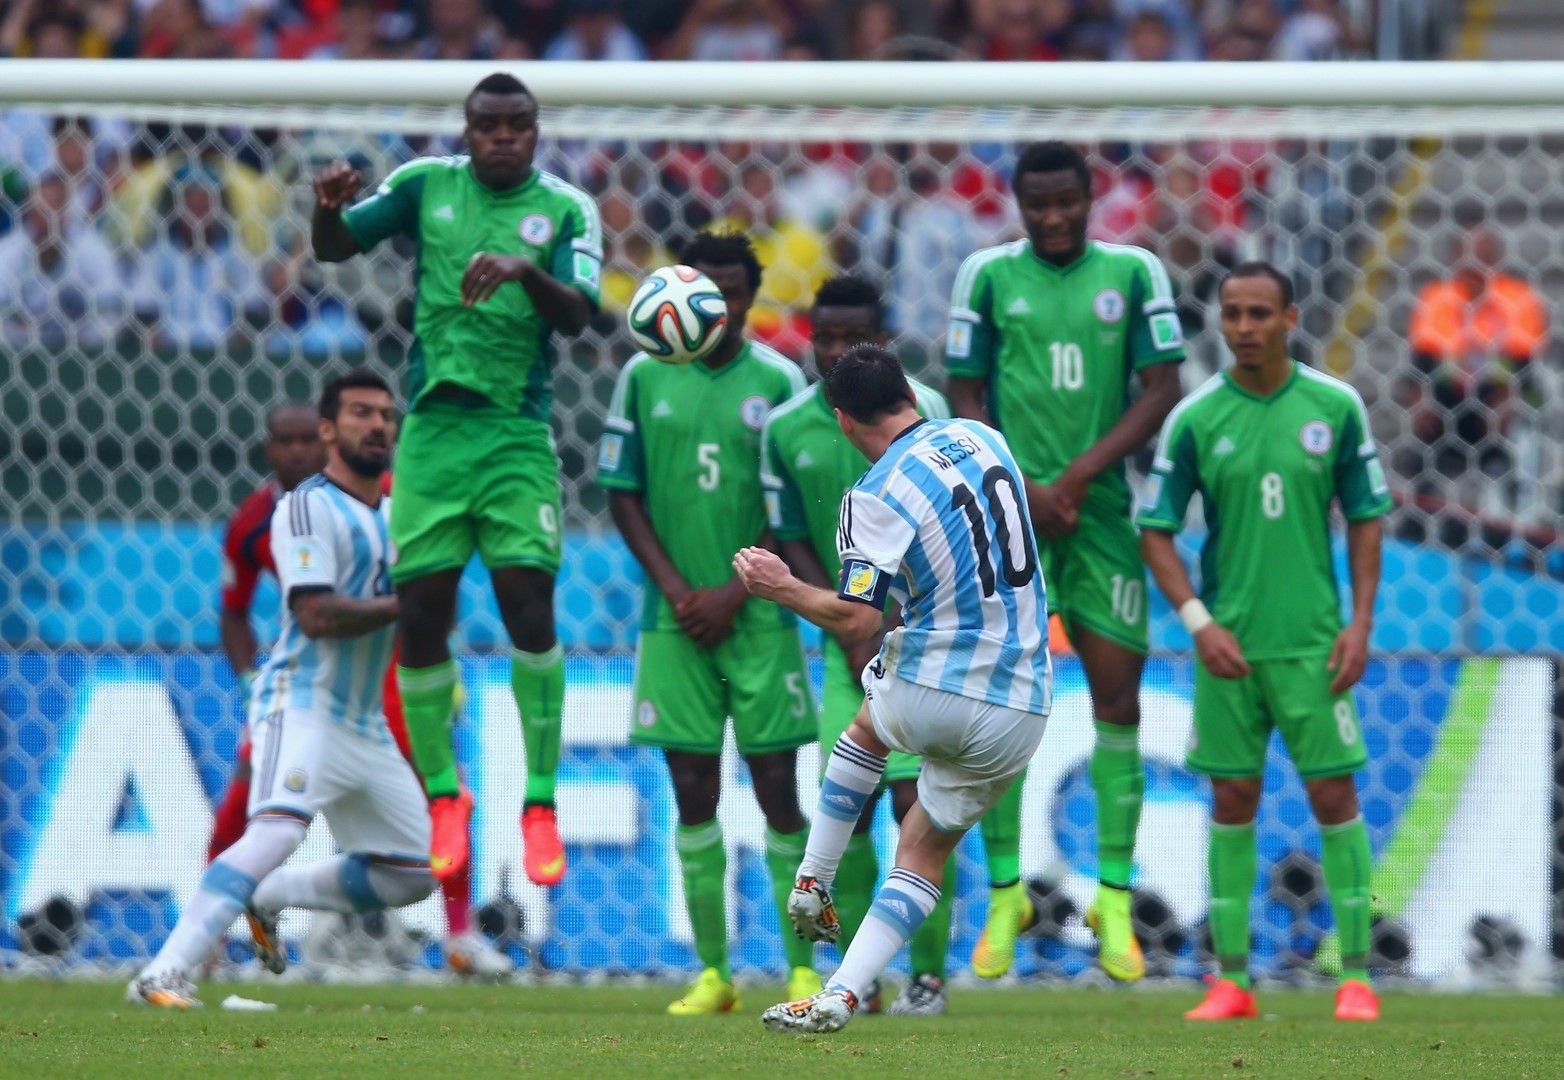 25 юни 2014 г. Меси бележи два пъти във вратата на Нигерия, а Аржентина отново побеждава - 3:2. В страната са пияни от щастие и нямат съмнения - Лео ще ни изведе до титлата! С 4 гола в 3 мача, това изглежда реалистичен сценарий.